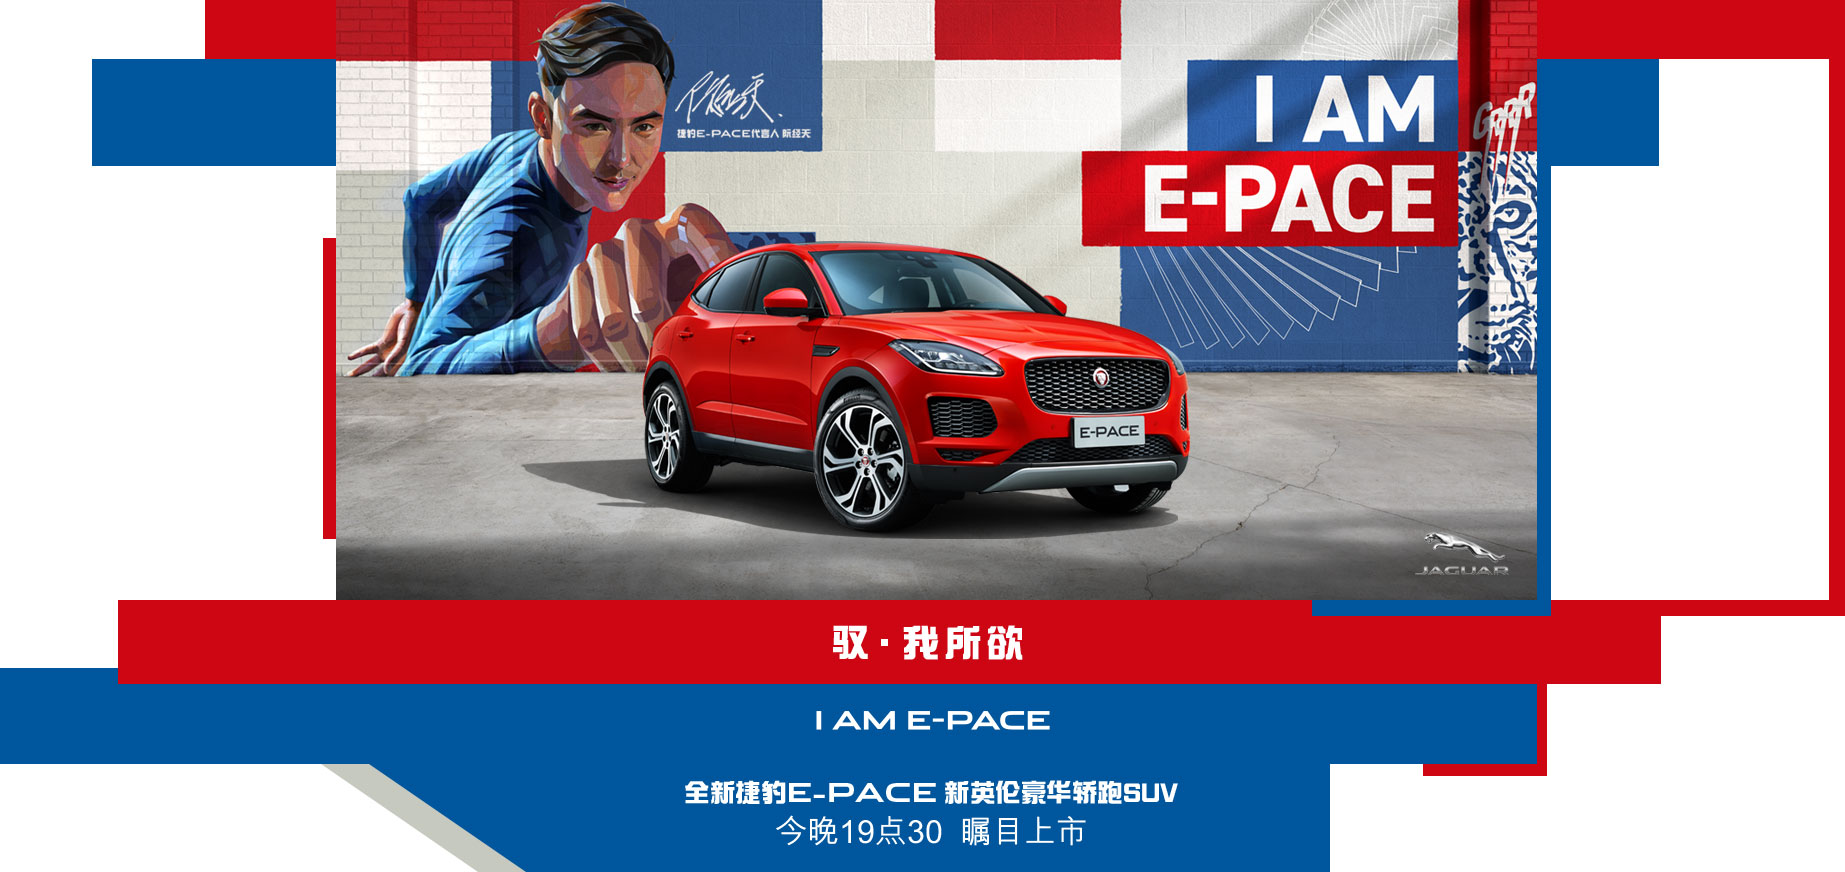 8.29：捷豹E-PACE豪华轿跑SUV上市营销！